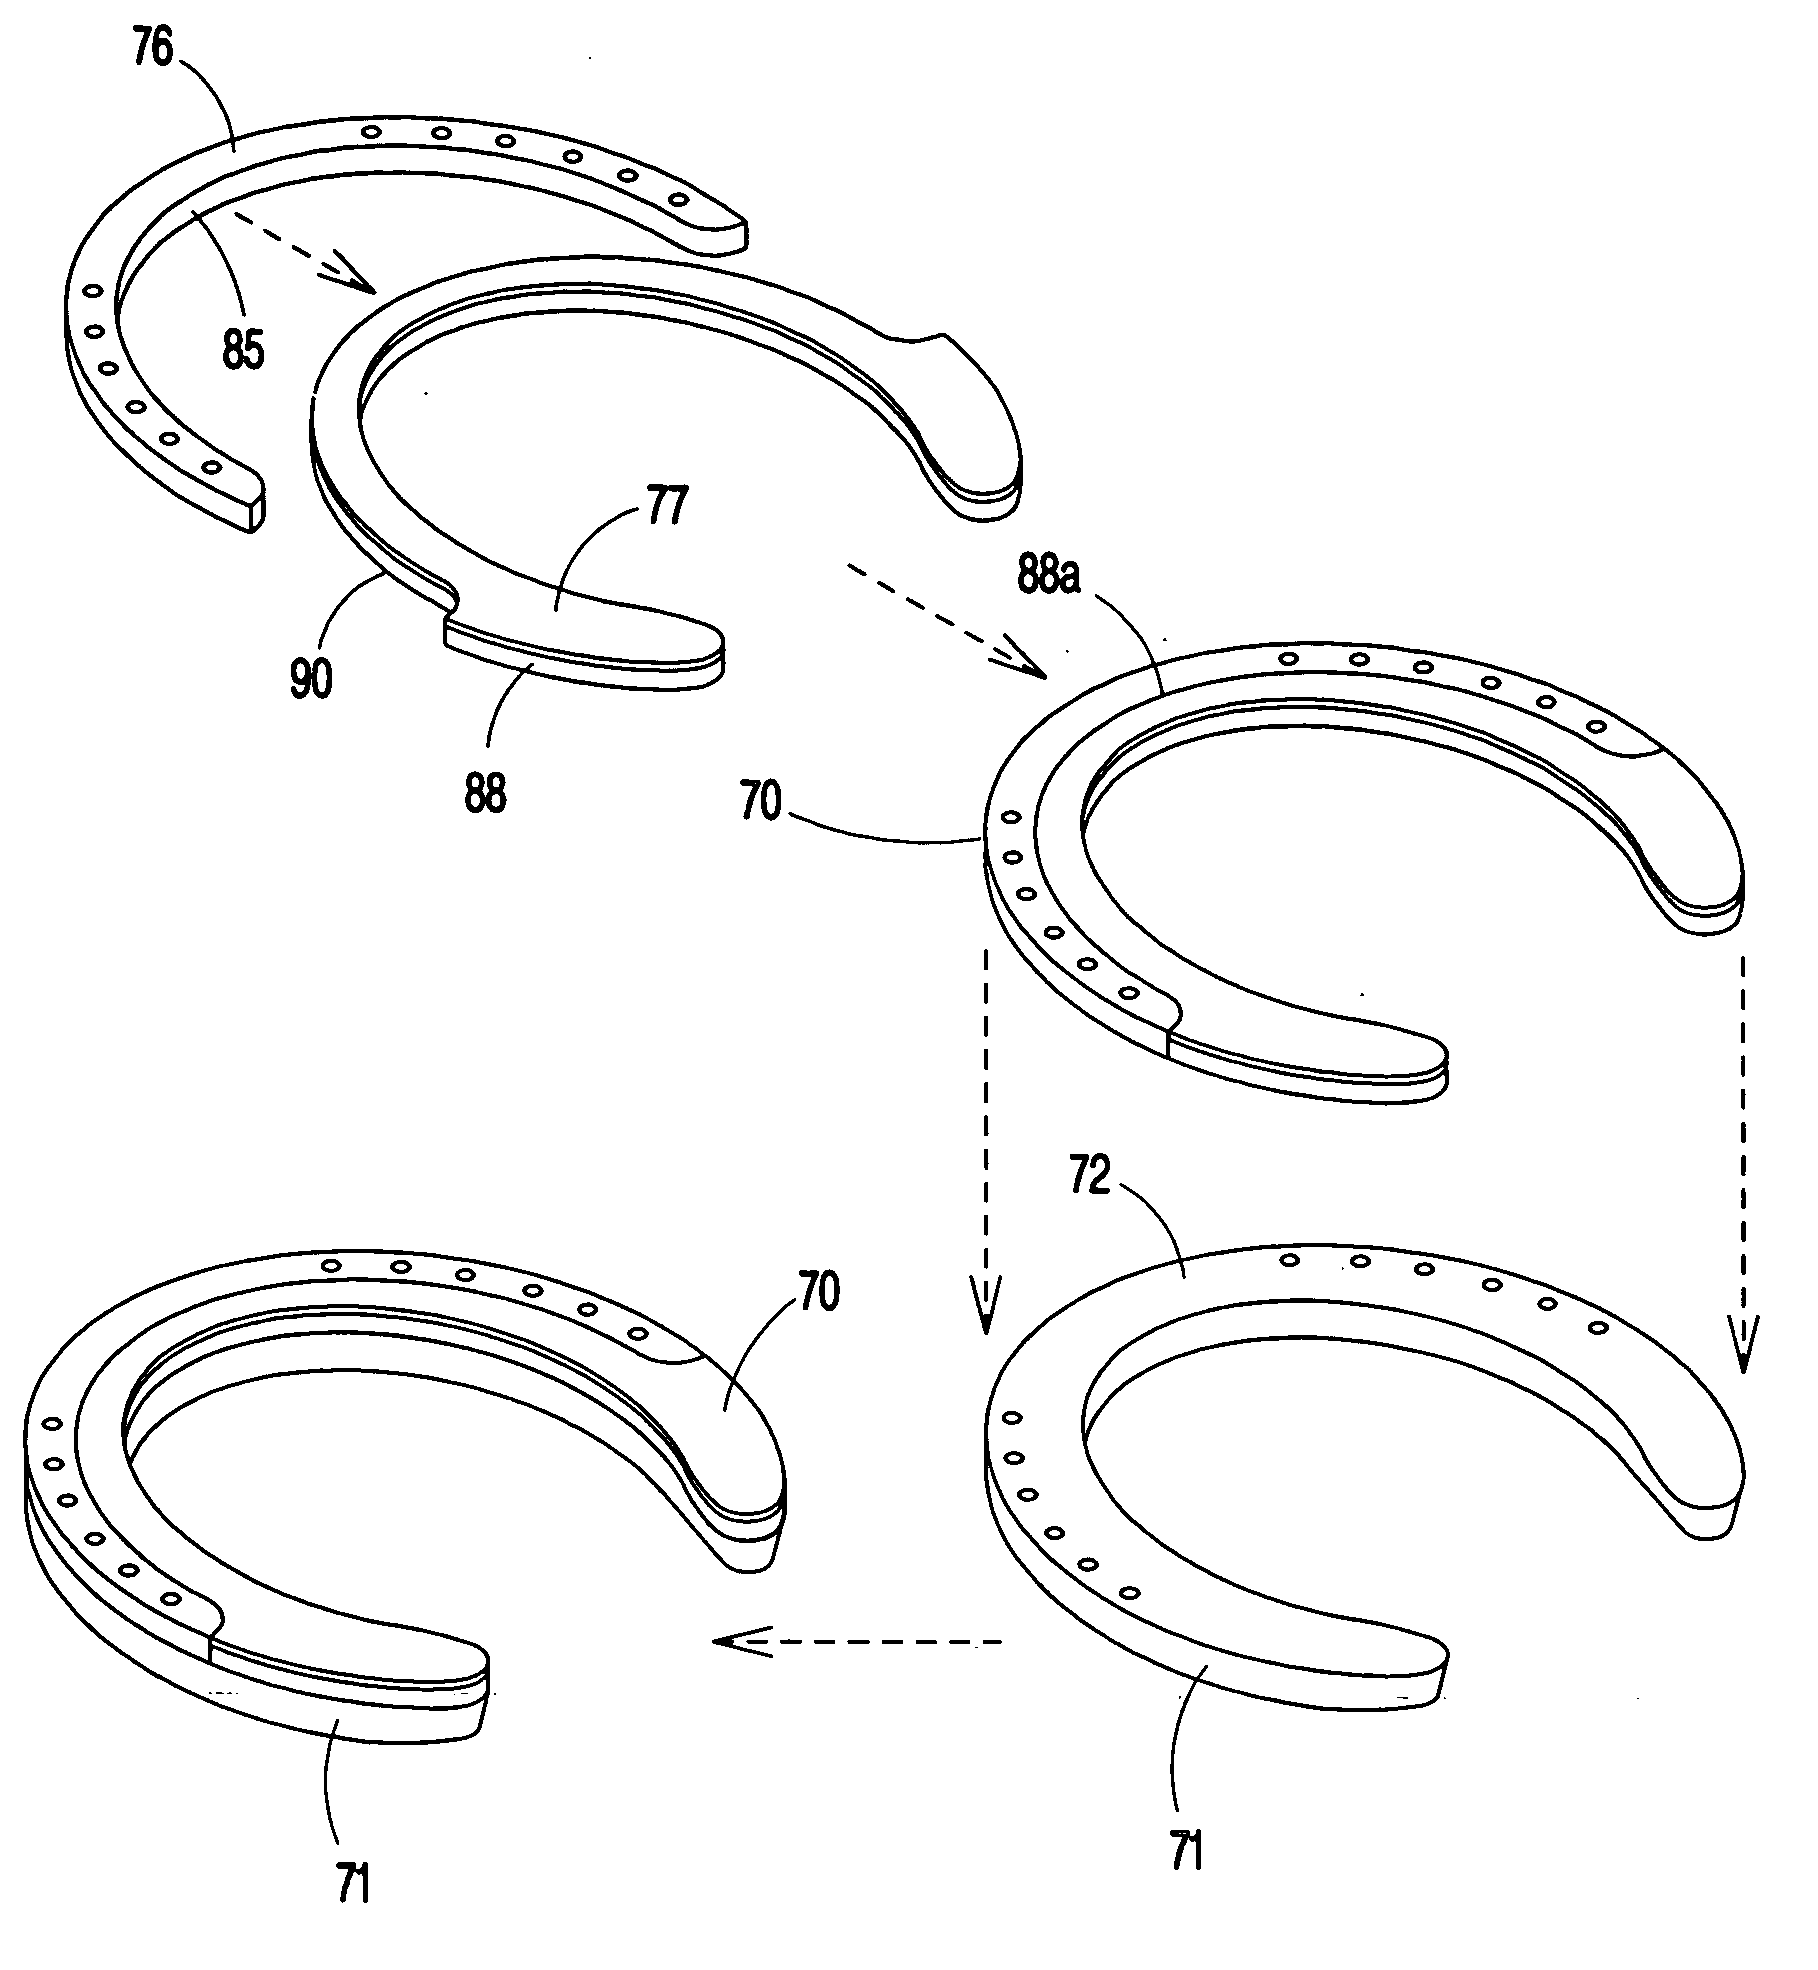 Horseshoe impact pad and method